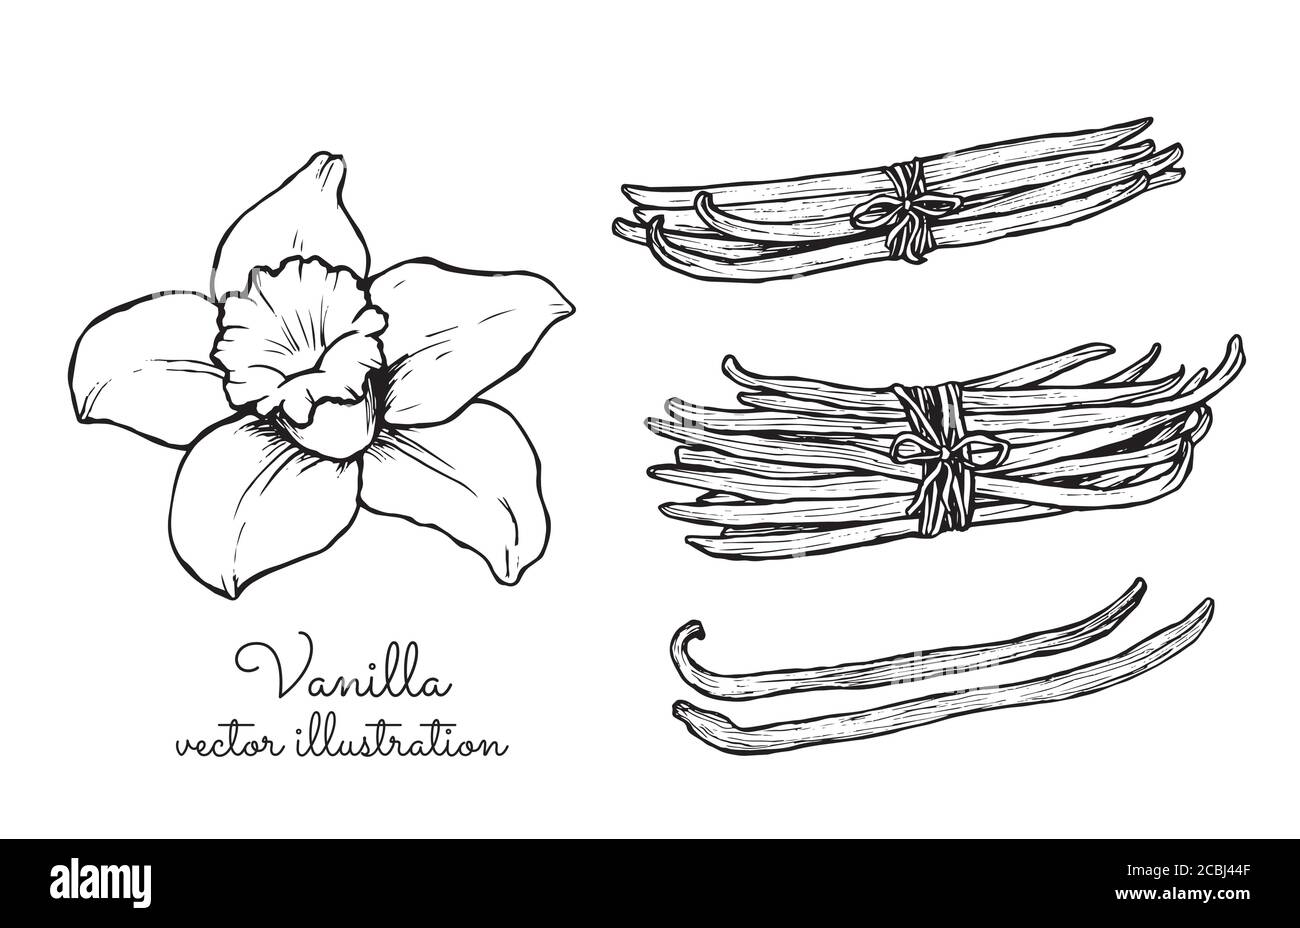 Collezione di grappoli di fiori vintage alla vaniglia e di bastoncini alla vaniglia Illustrazione Vettoriale